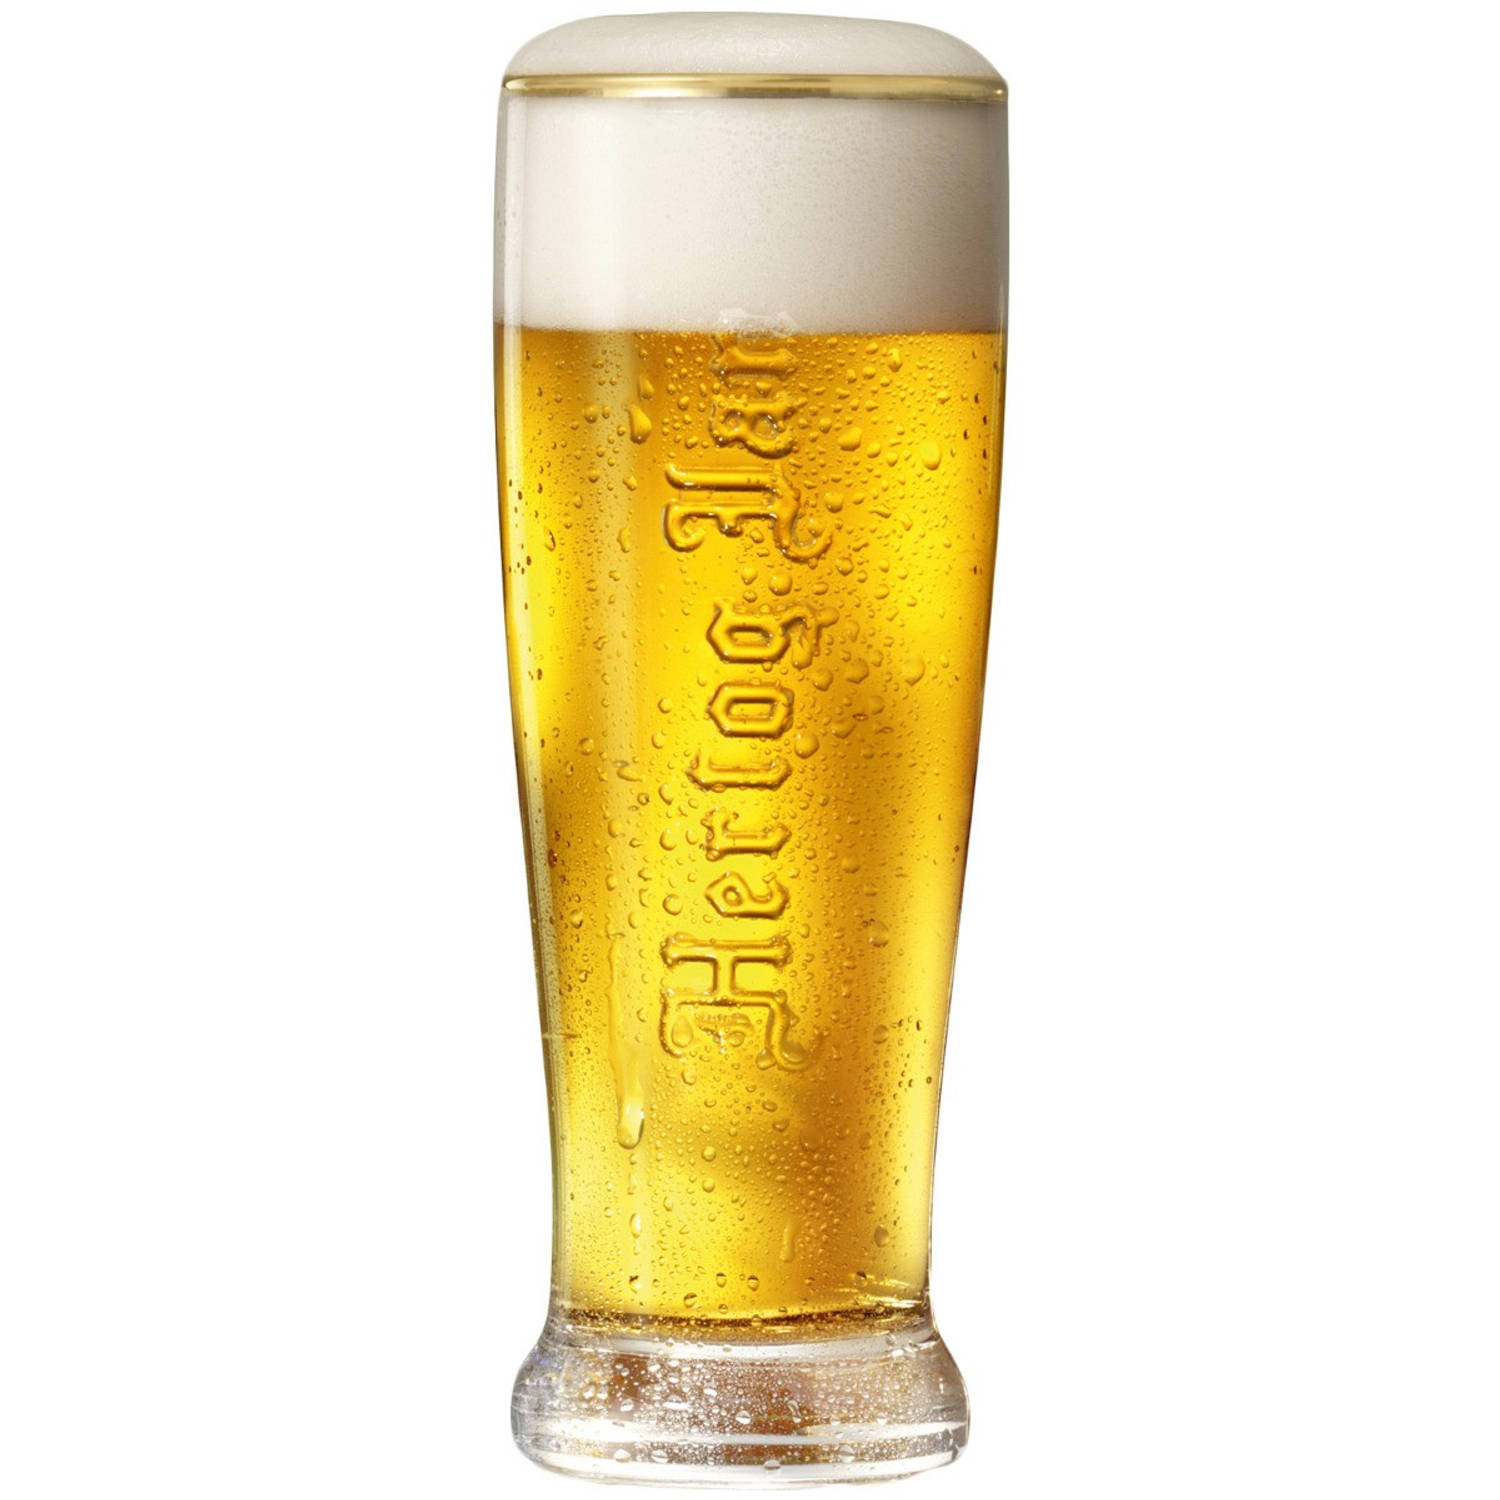 Hertog Jan Pilsener Bierglas 25cl - Bier Glas 0,25 l - 250 ml